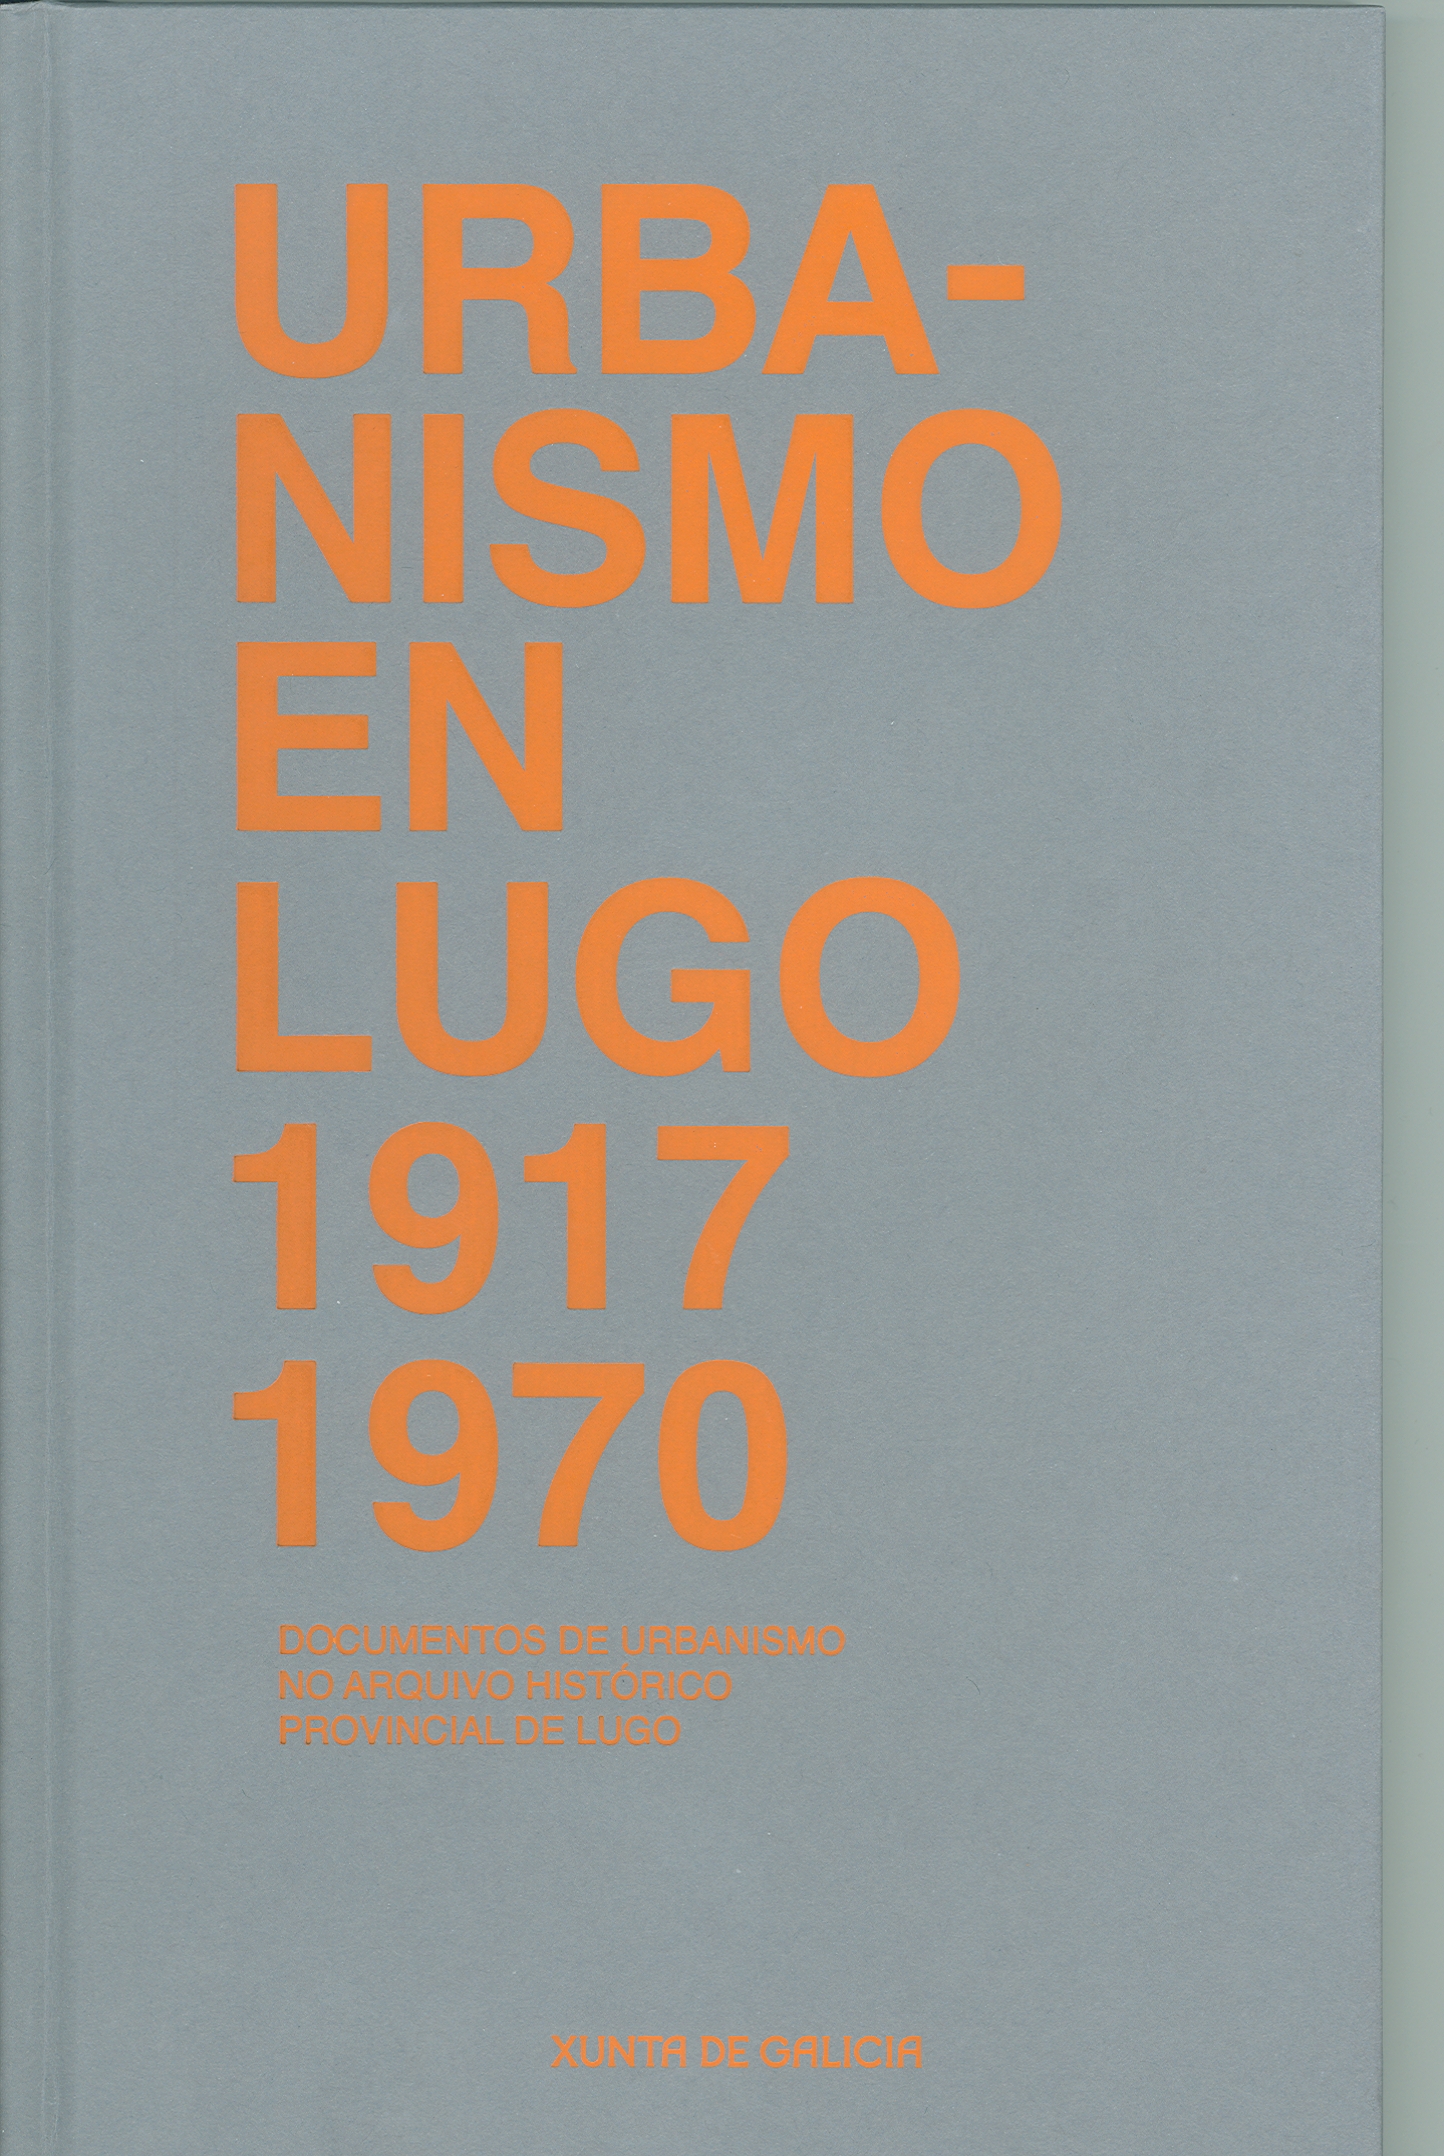 Urbanismo en Lugo, 1917-1970. Documentos de urbanismo no Arquivo Histórico Provincial de Lugo